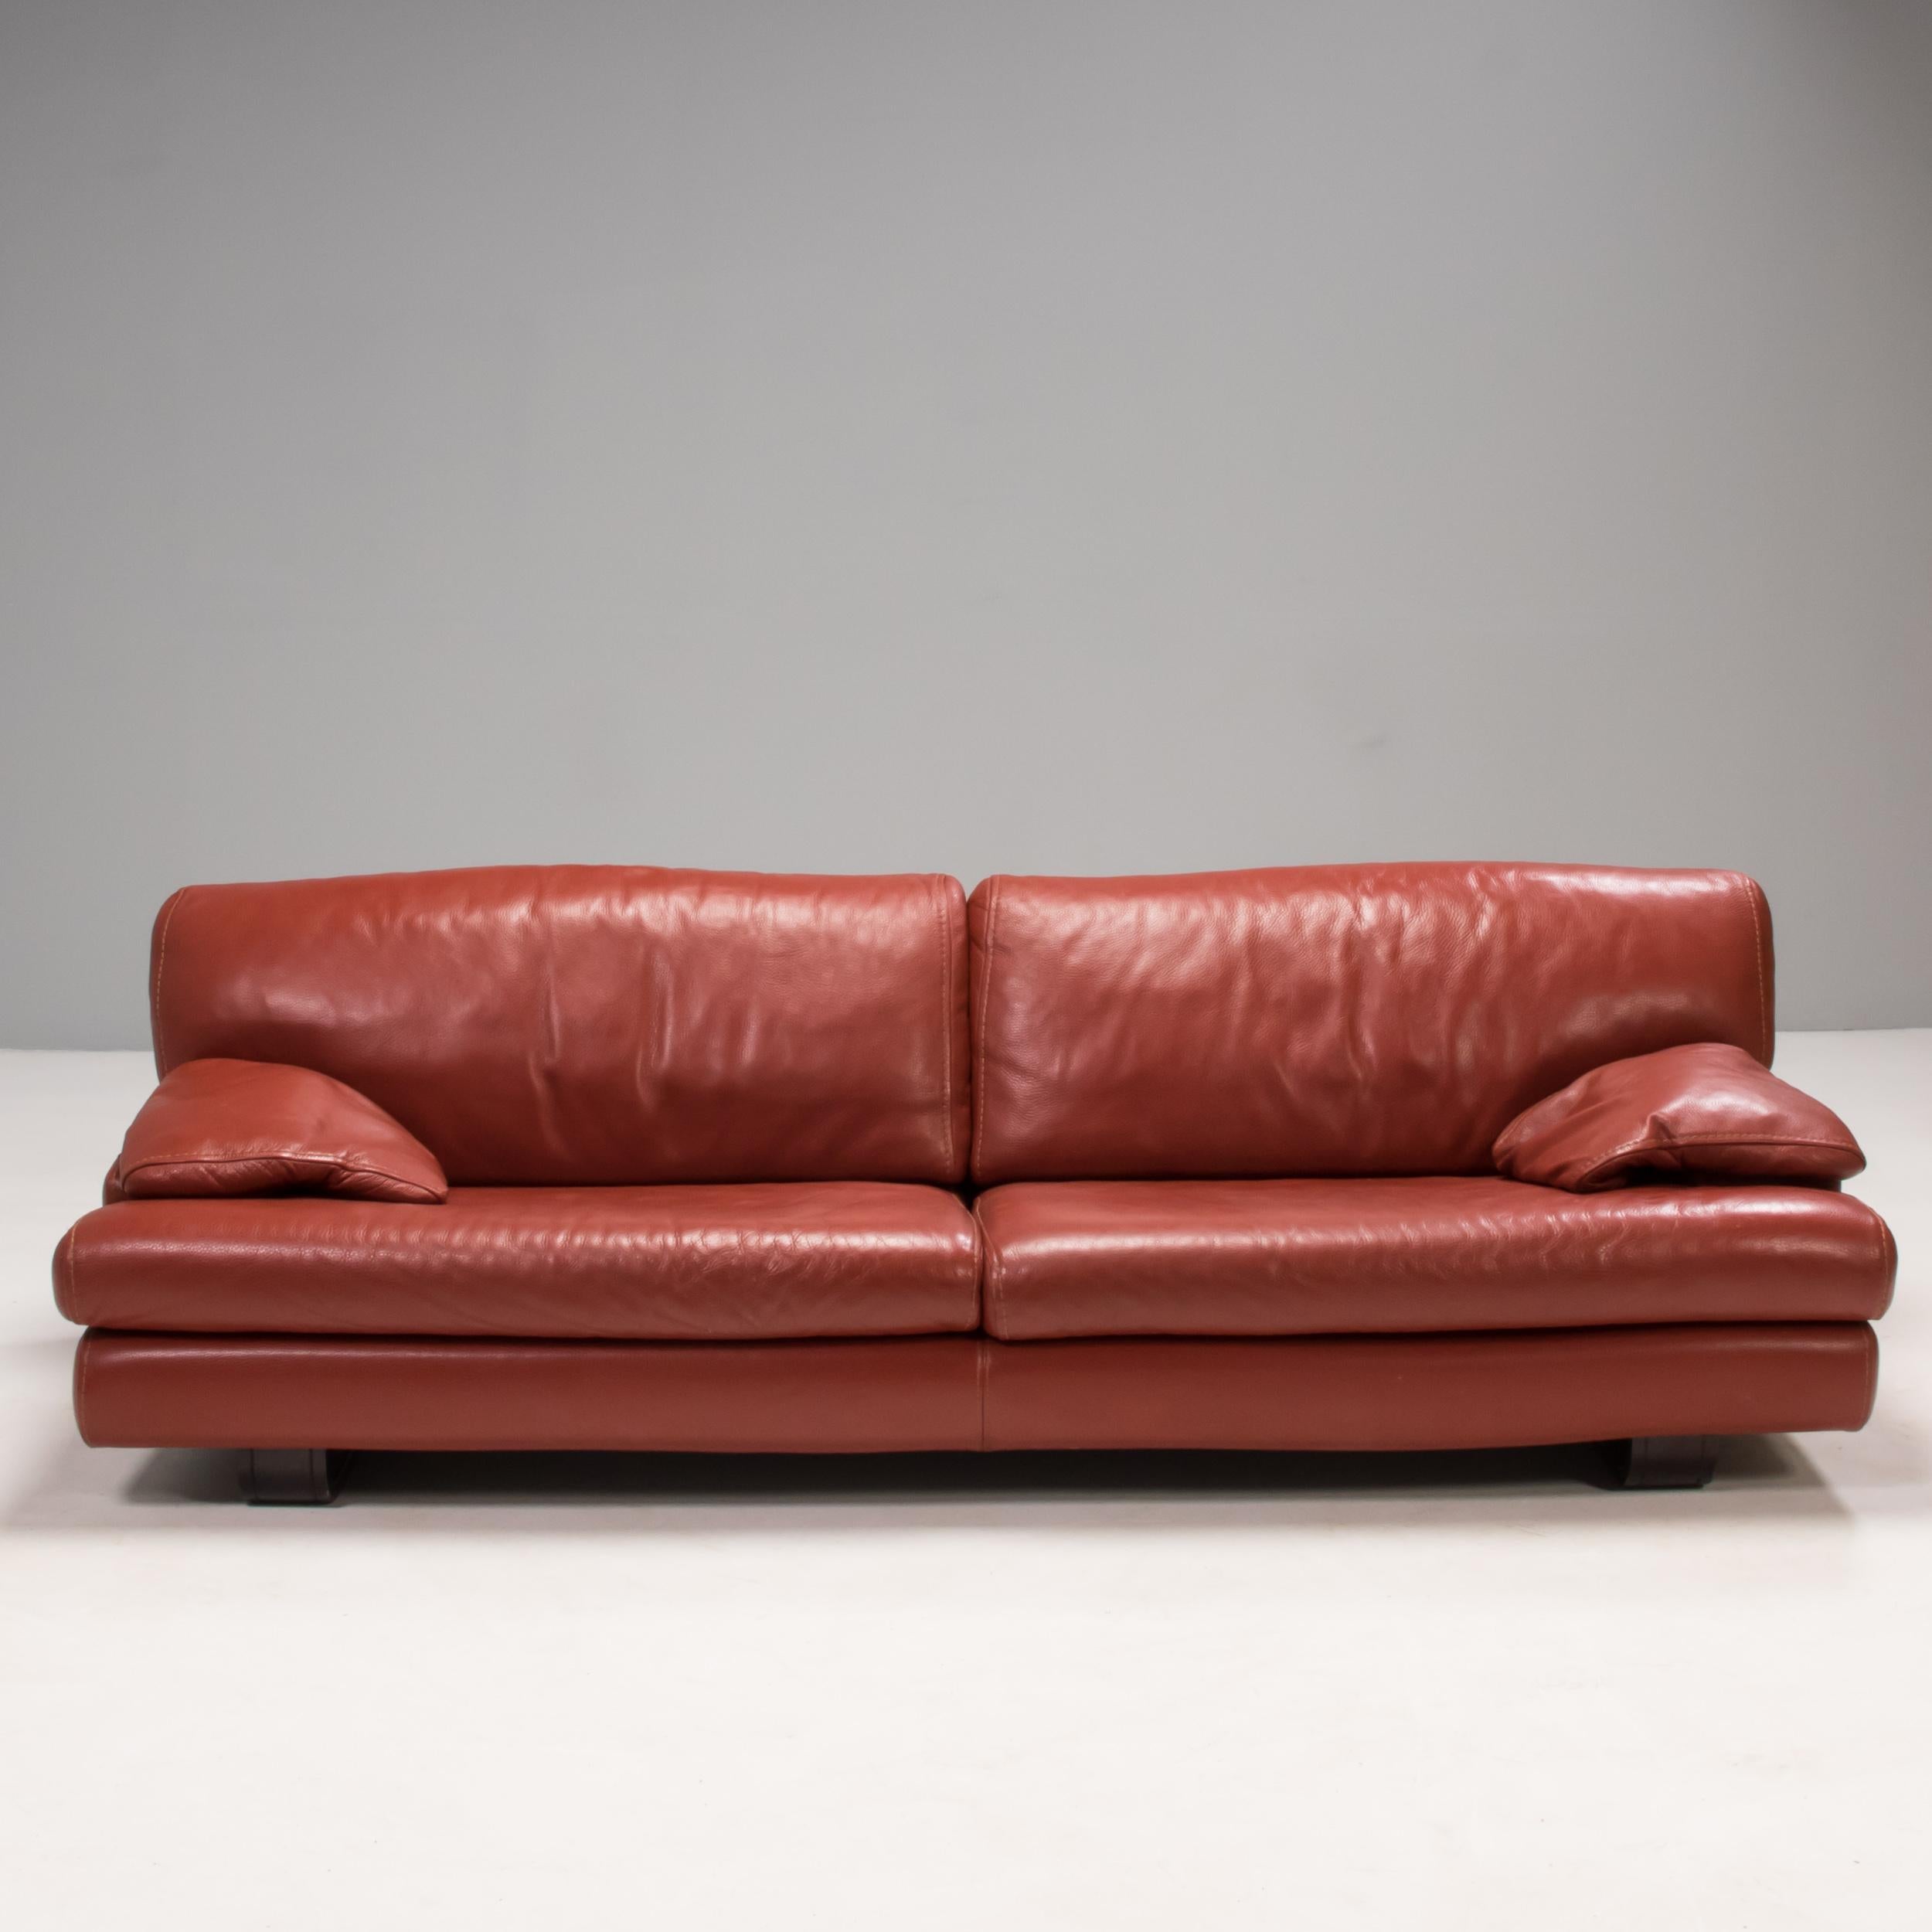 Conçu par Roche Bobois, ce canapé offre un confort ultime grâce à ses sièges profonds et à son revêtement en cuir rouge doux.

Le canapé comporte deux coussins d'assise et deux coussins de dossier avec des coussins supplémentaires qui deviennent